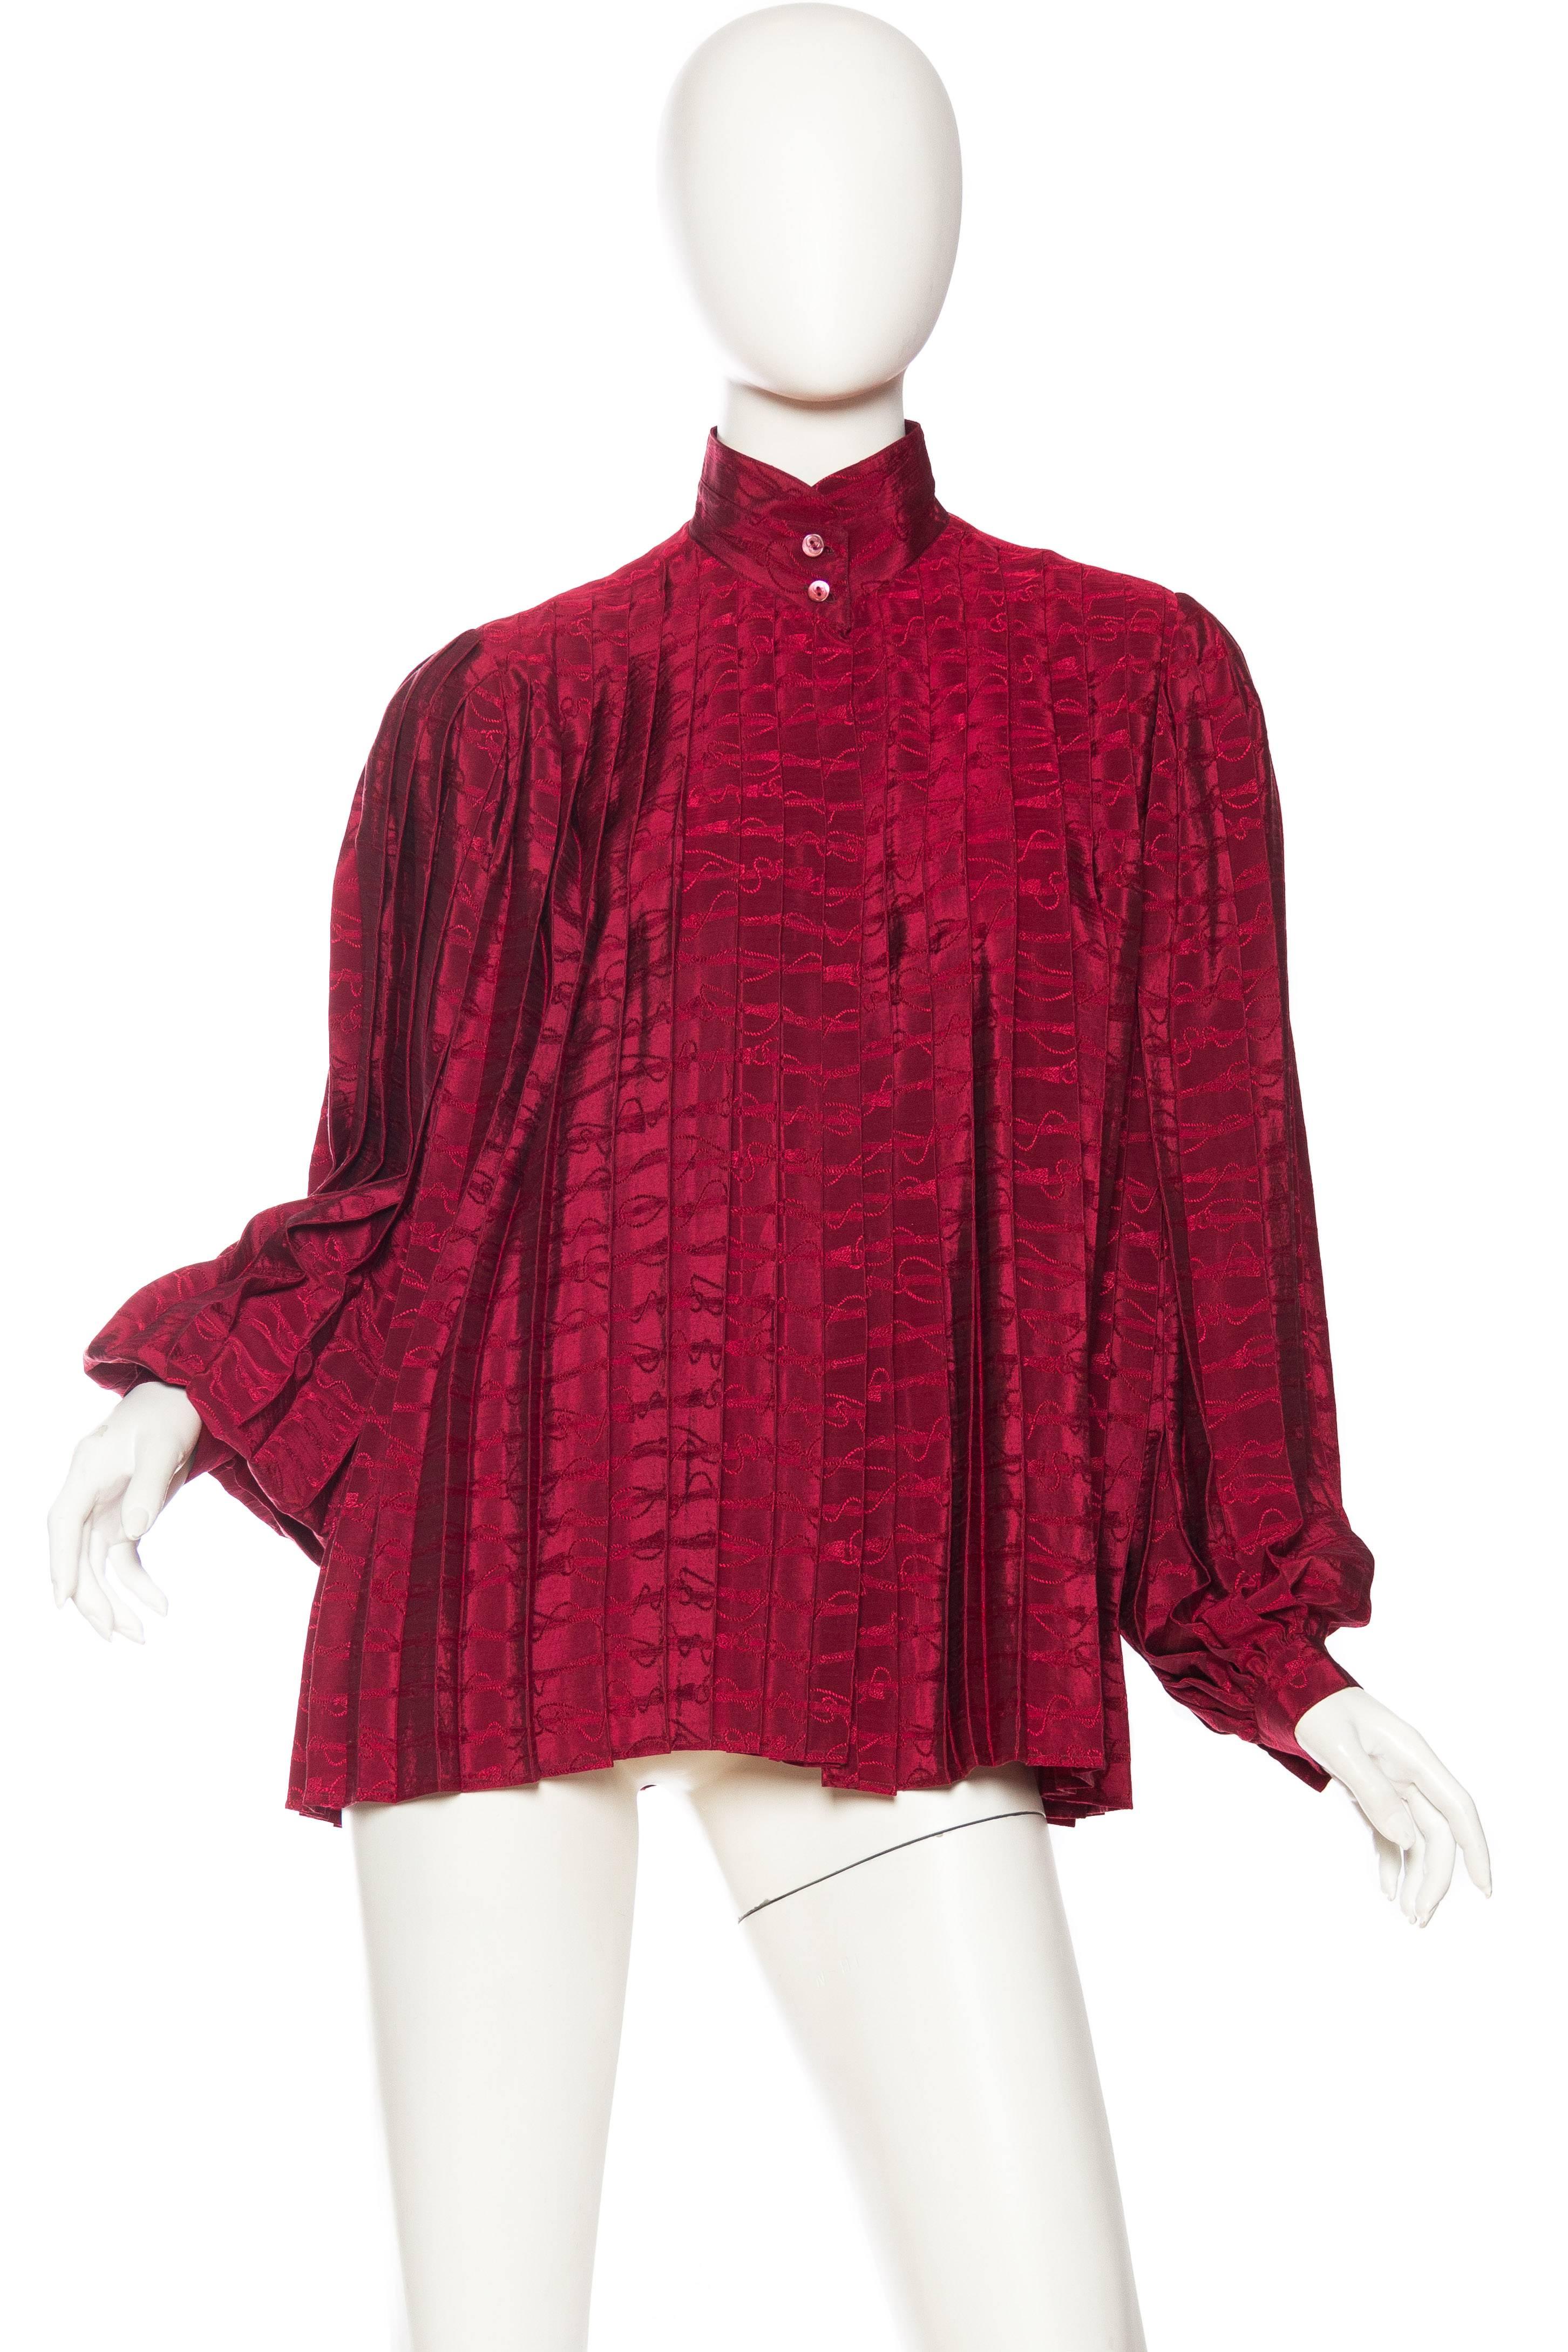 blouse plissée en soie Jaquard rouge canneberge 1970S GUCCI